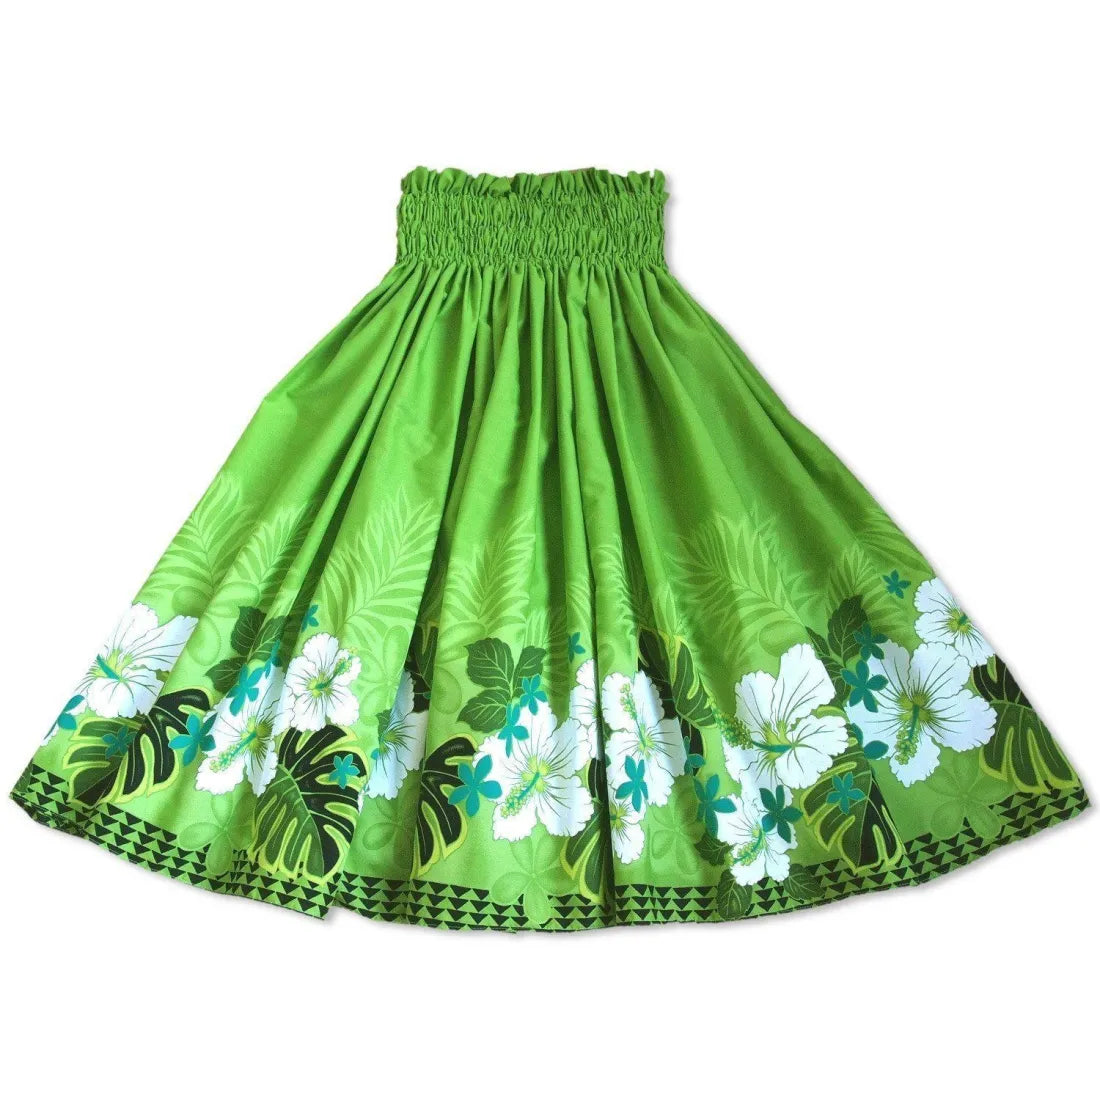 Kauai Green Single Pa’u Hawaiian Hula Skirt - Made In Hawaii